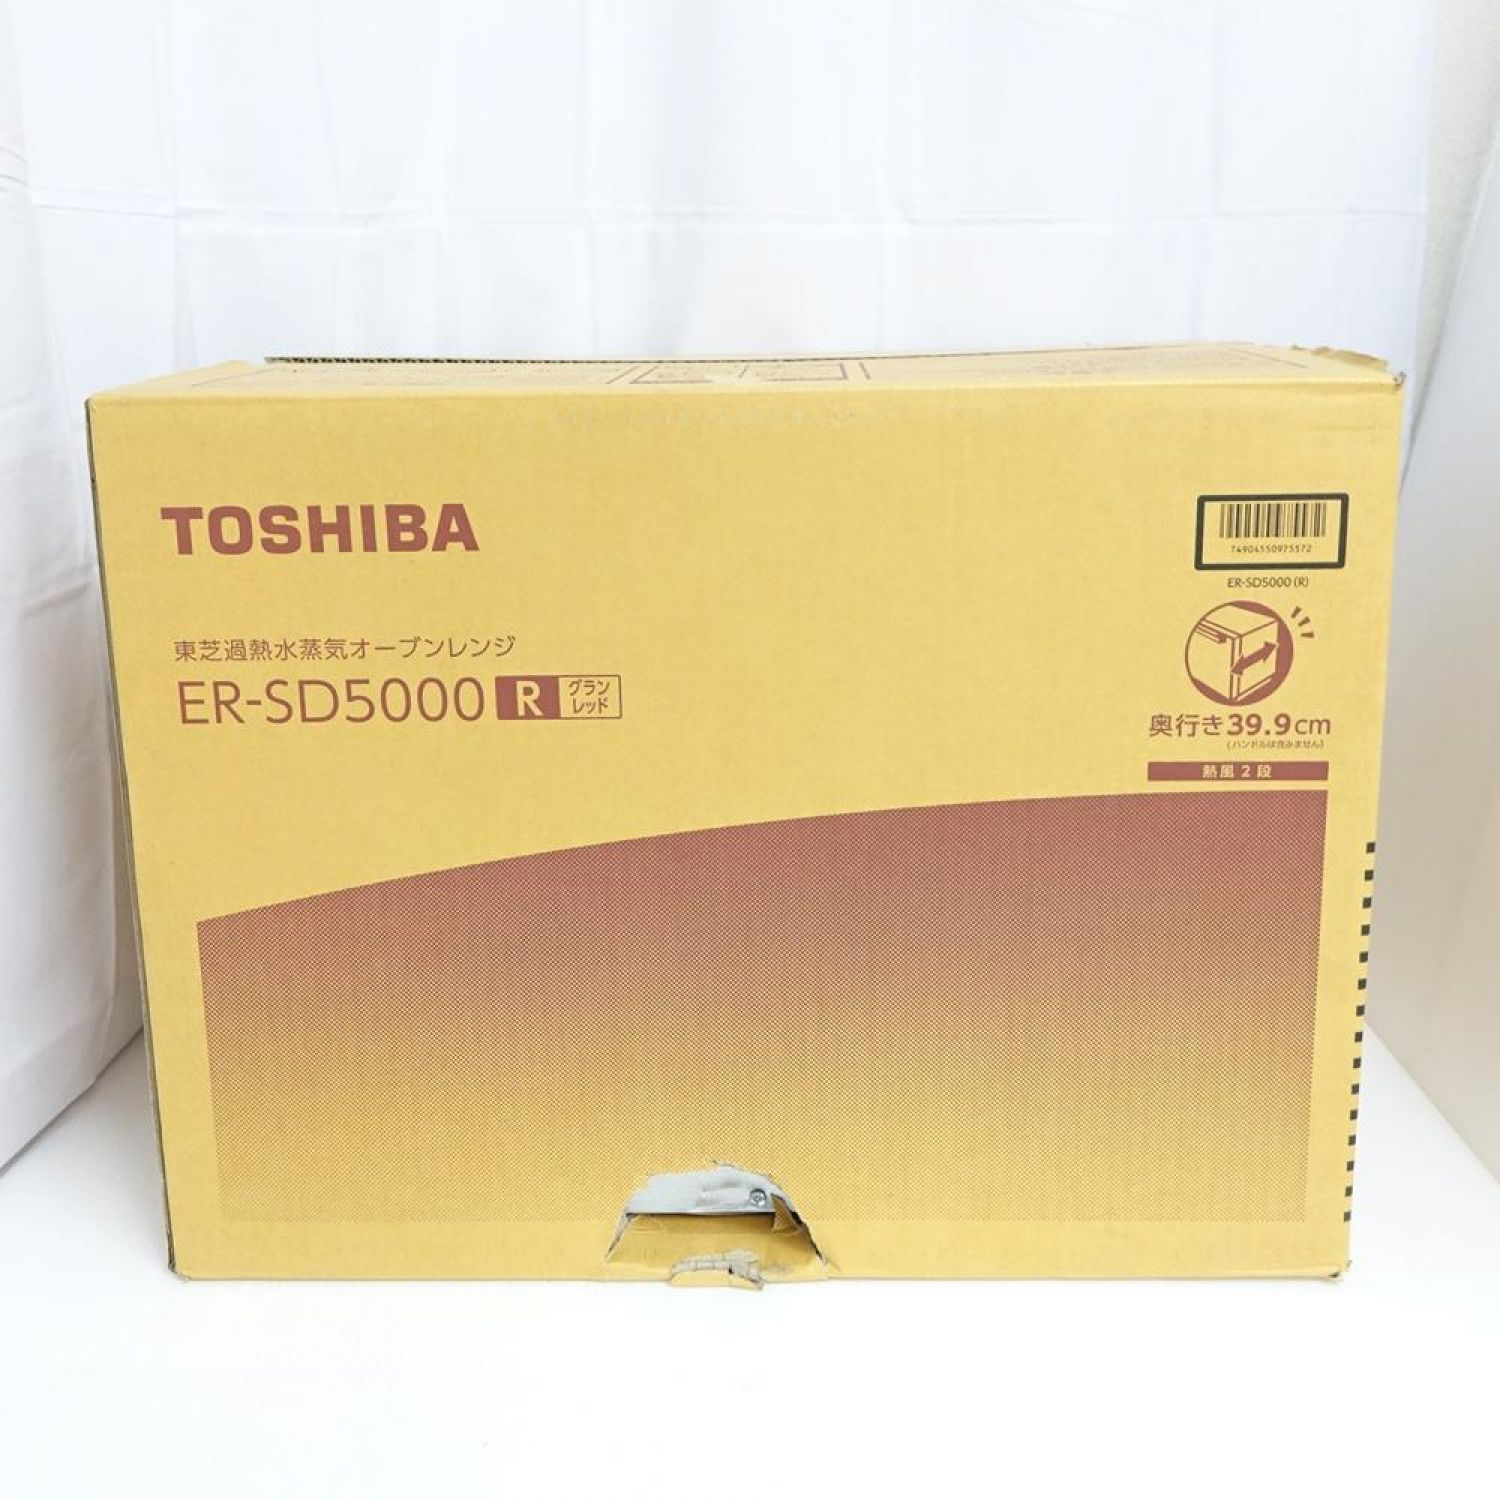 ノバク・ジョコビッチ TOSHIBA ER-SD5000(R)